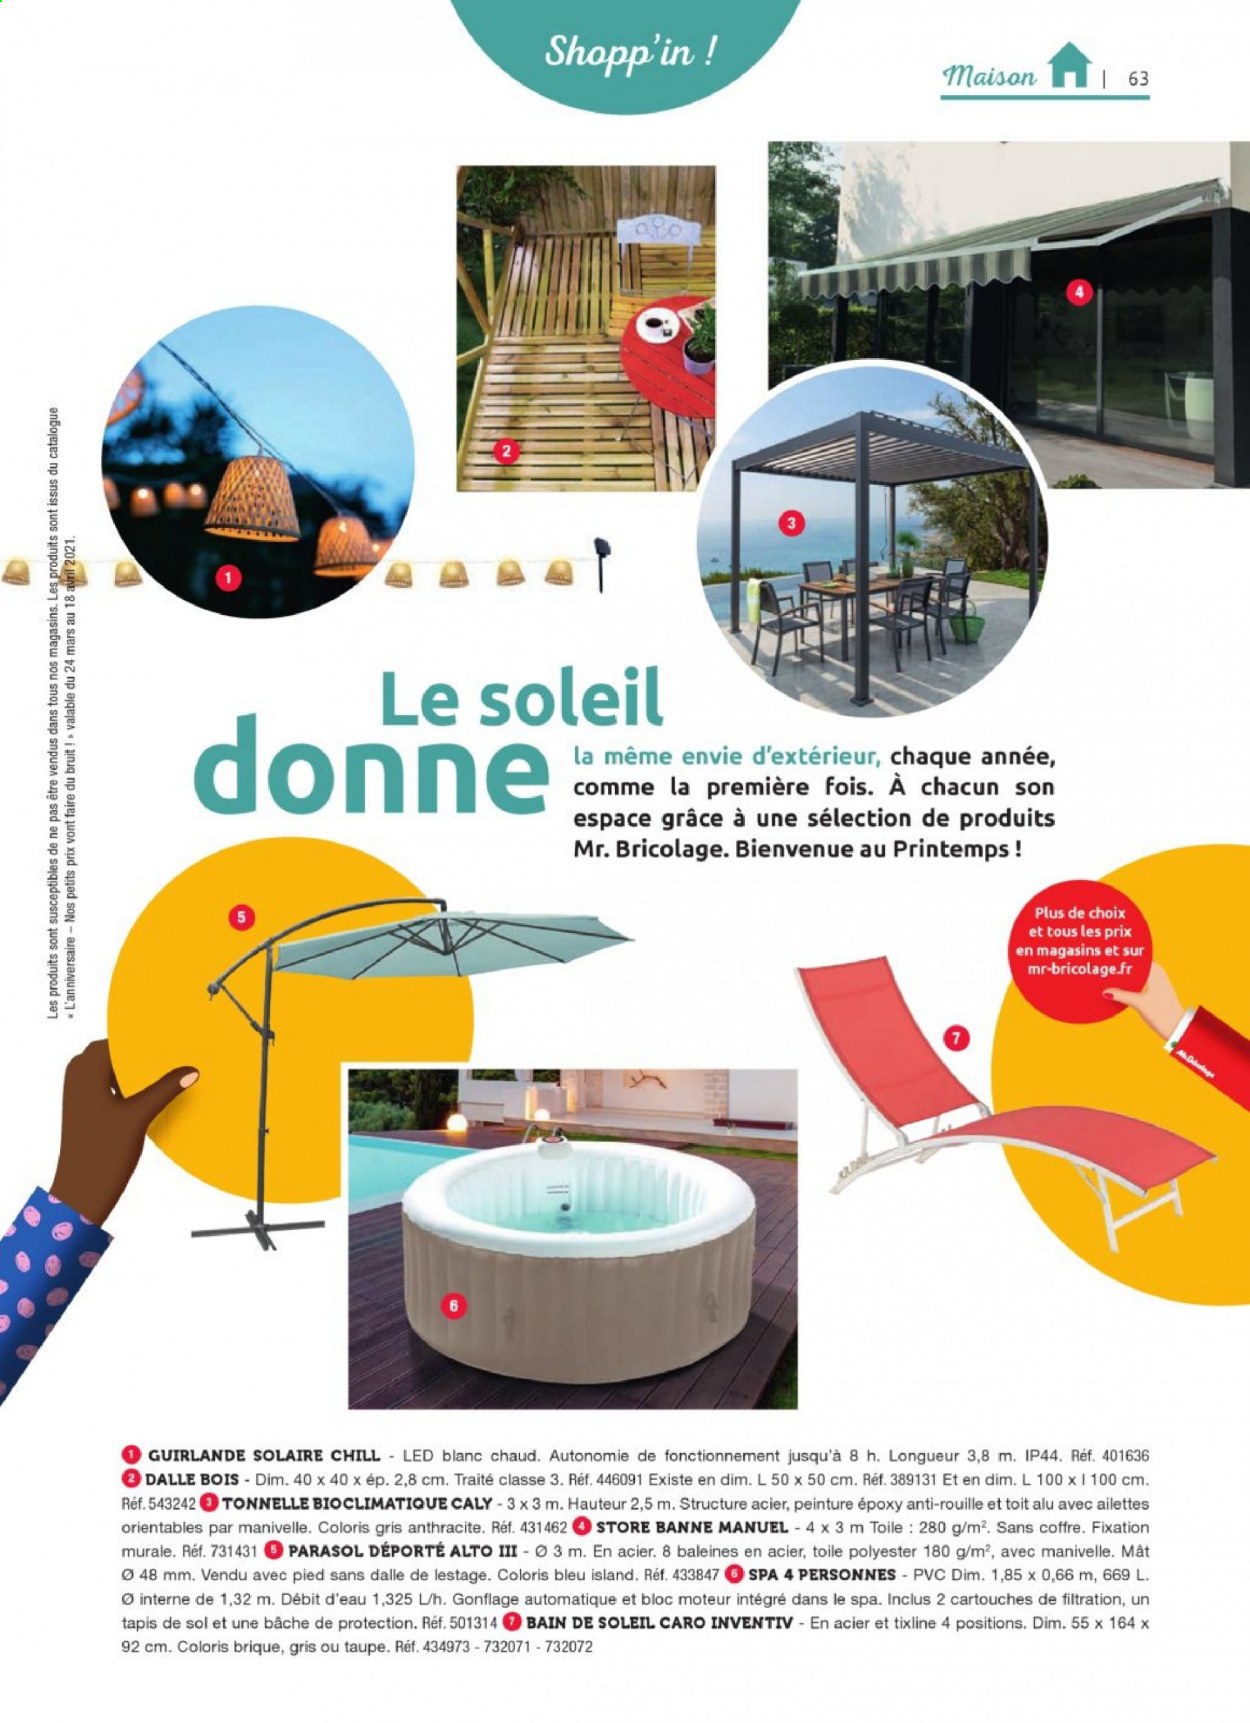 thumbnail - Catalogue Mr. Bricolage - Produits soldés - bain de soleil, tonnelle, parasol, parasol déporté. Page 63.